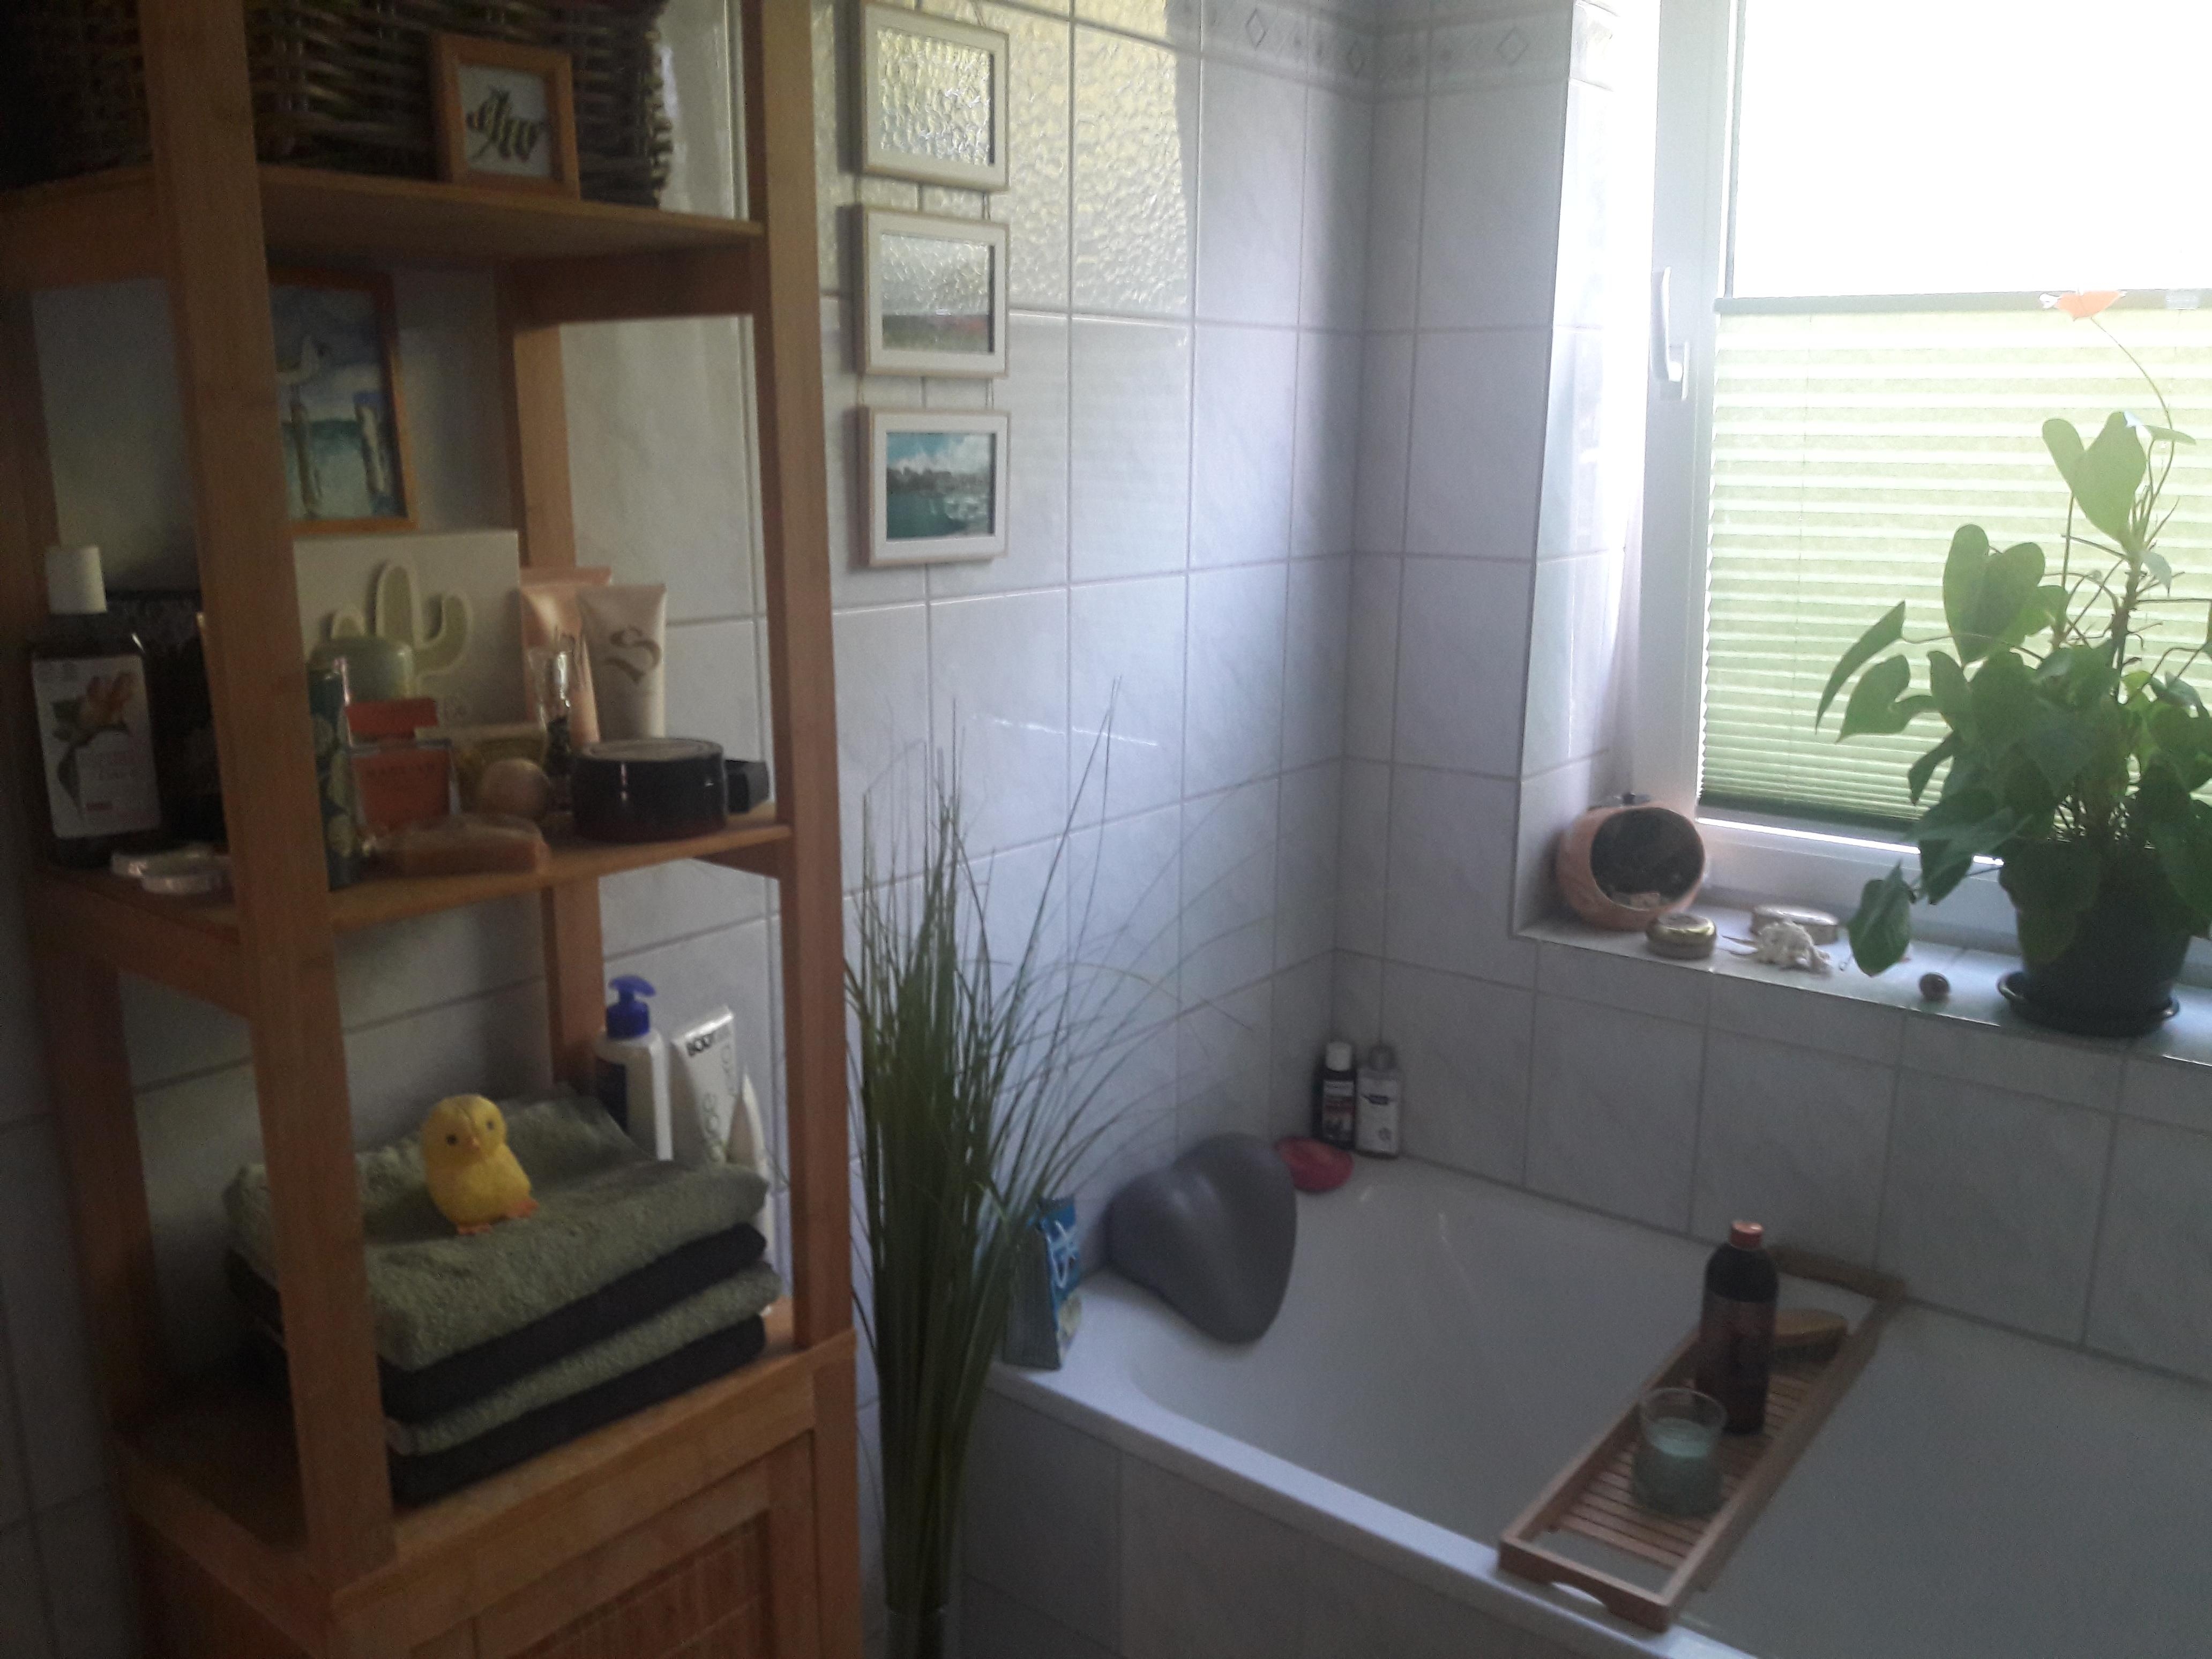 #Badezimmer #livingchallenge Kleines Bad aber gemütliche Badewanne